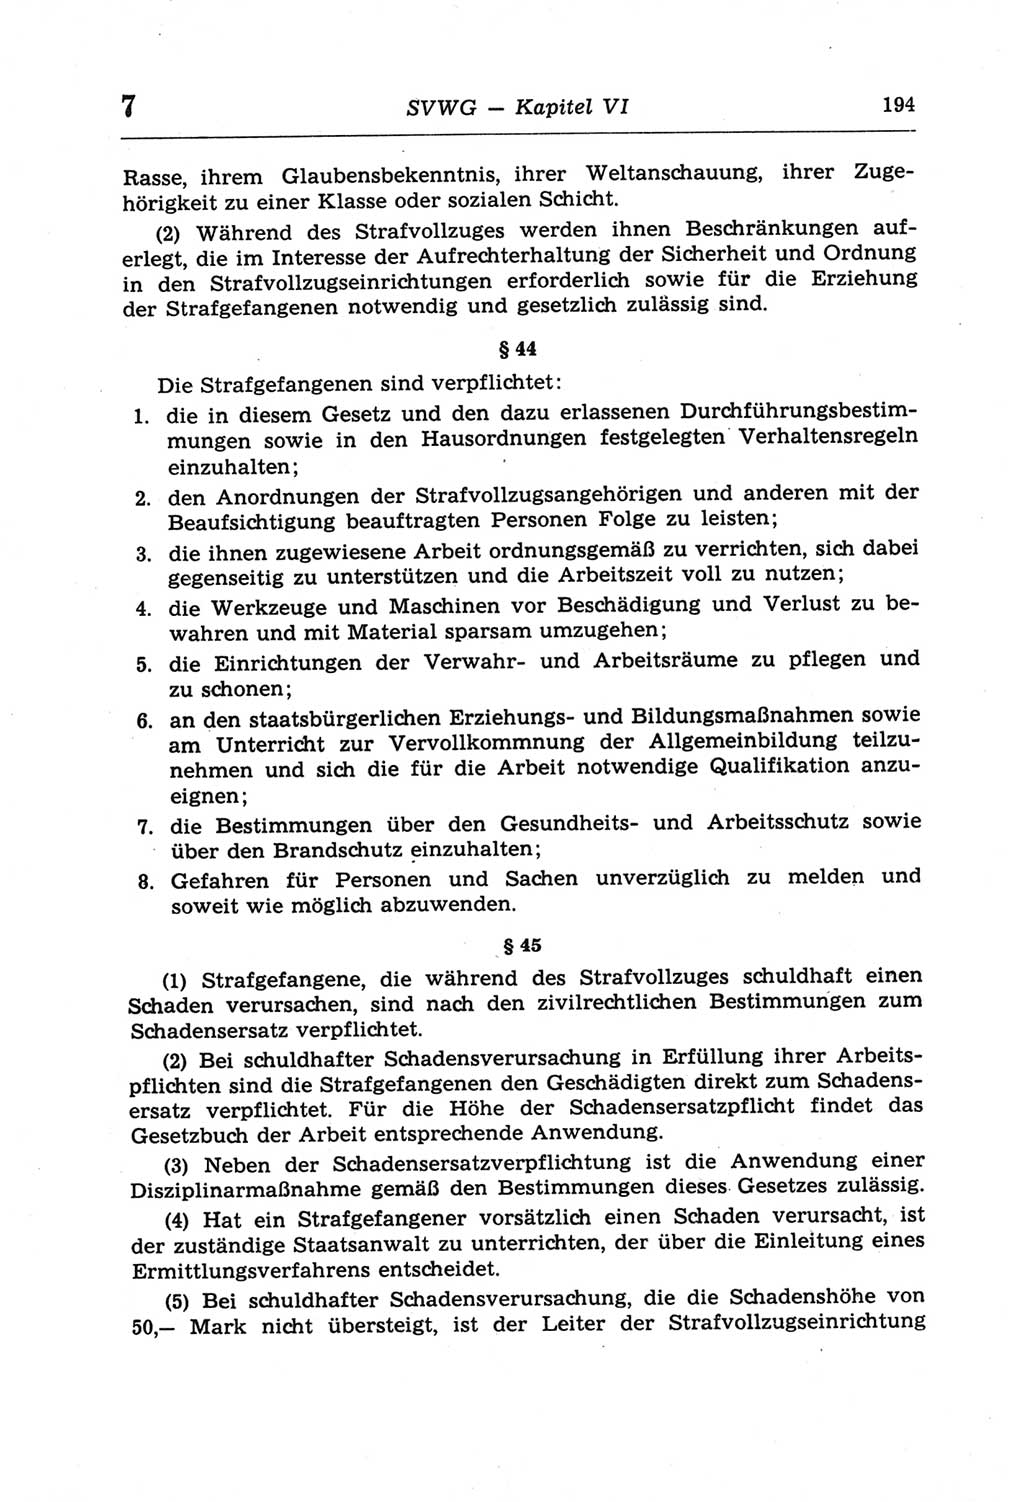 Strafprozeßordnung (StPO) der Deutschen Demokratischen Republik (DDR) und angrenzende Gesetze und Bestimmungen 1968, Seite 194 (StPO Ges. Bstgn. DDR 1968, S. 194)